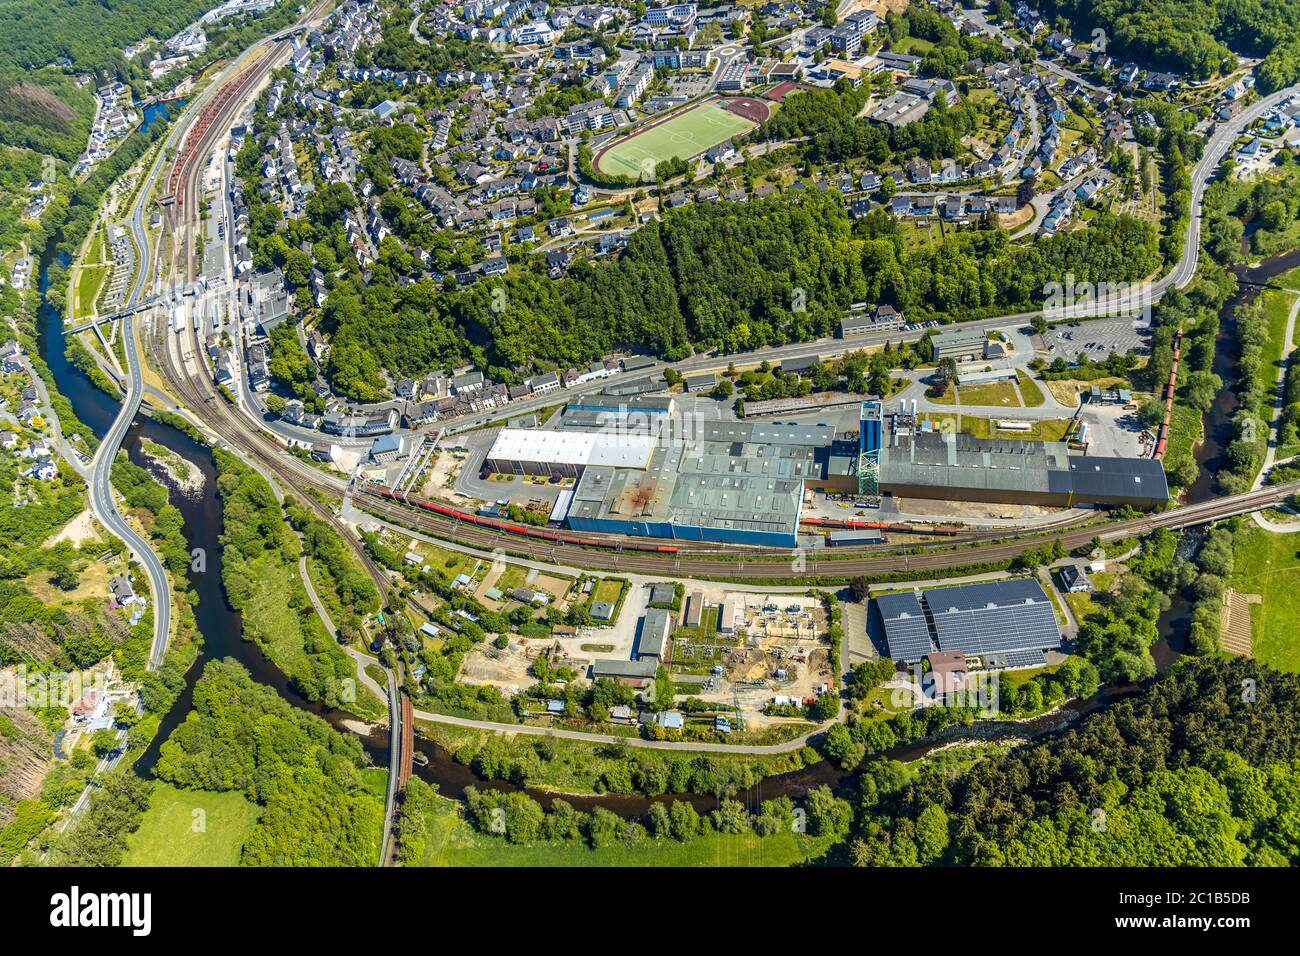 Aerial photograph, Finnentrop railway station, ThyssenKrupp Steel, River Lenne, FC Finnentrop sports ground, Finnentrop, Sauerland, North Rhine-Westph Stock Photo